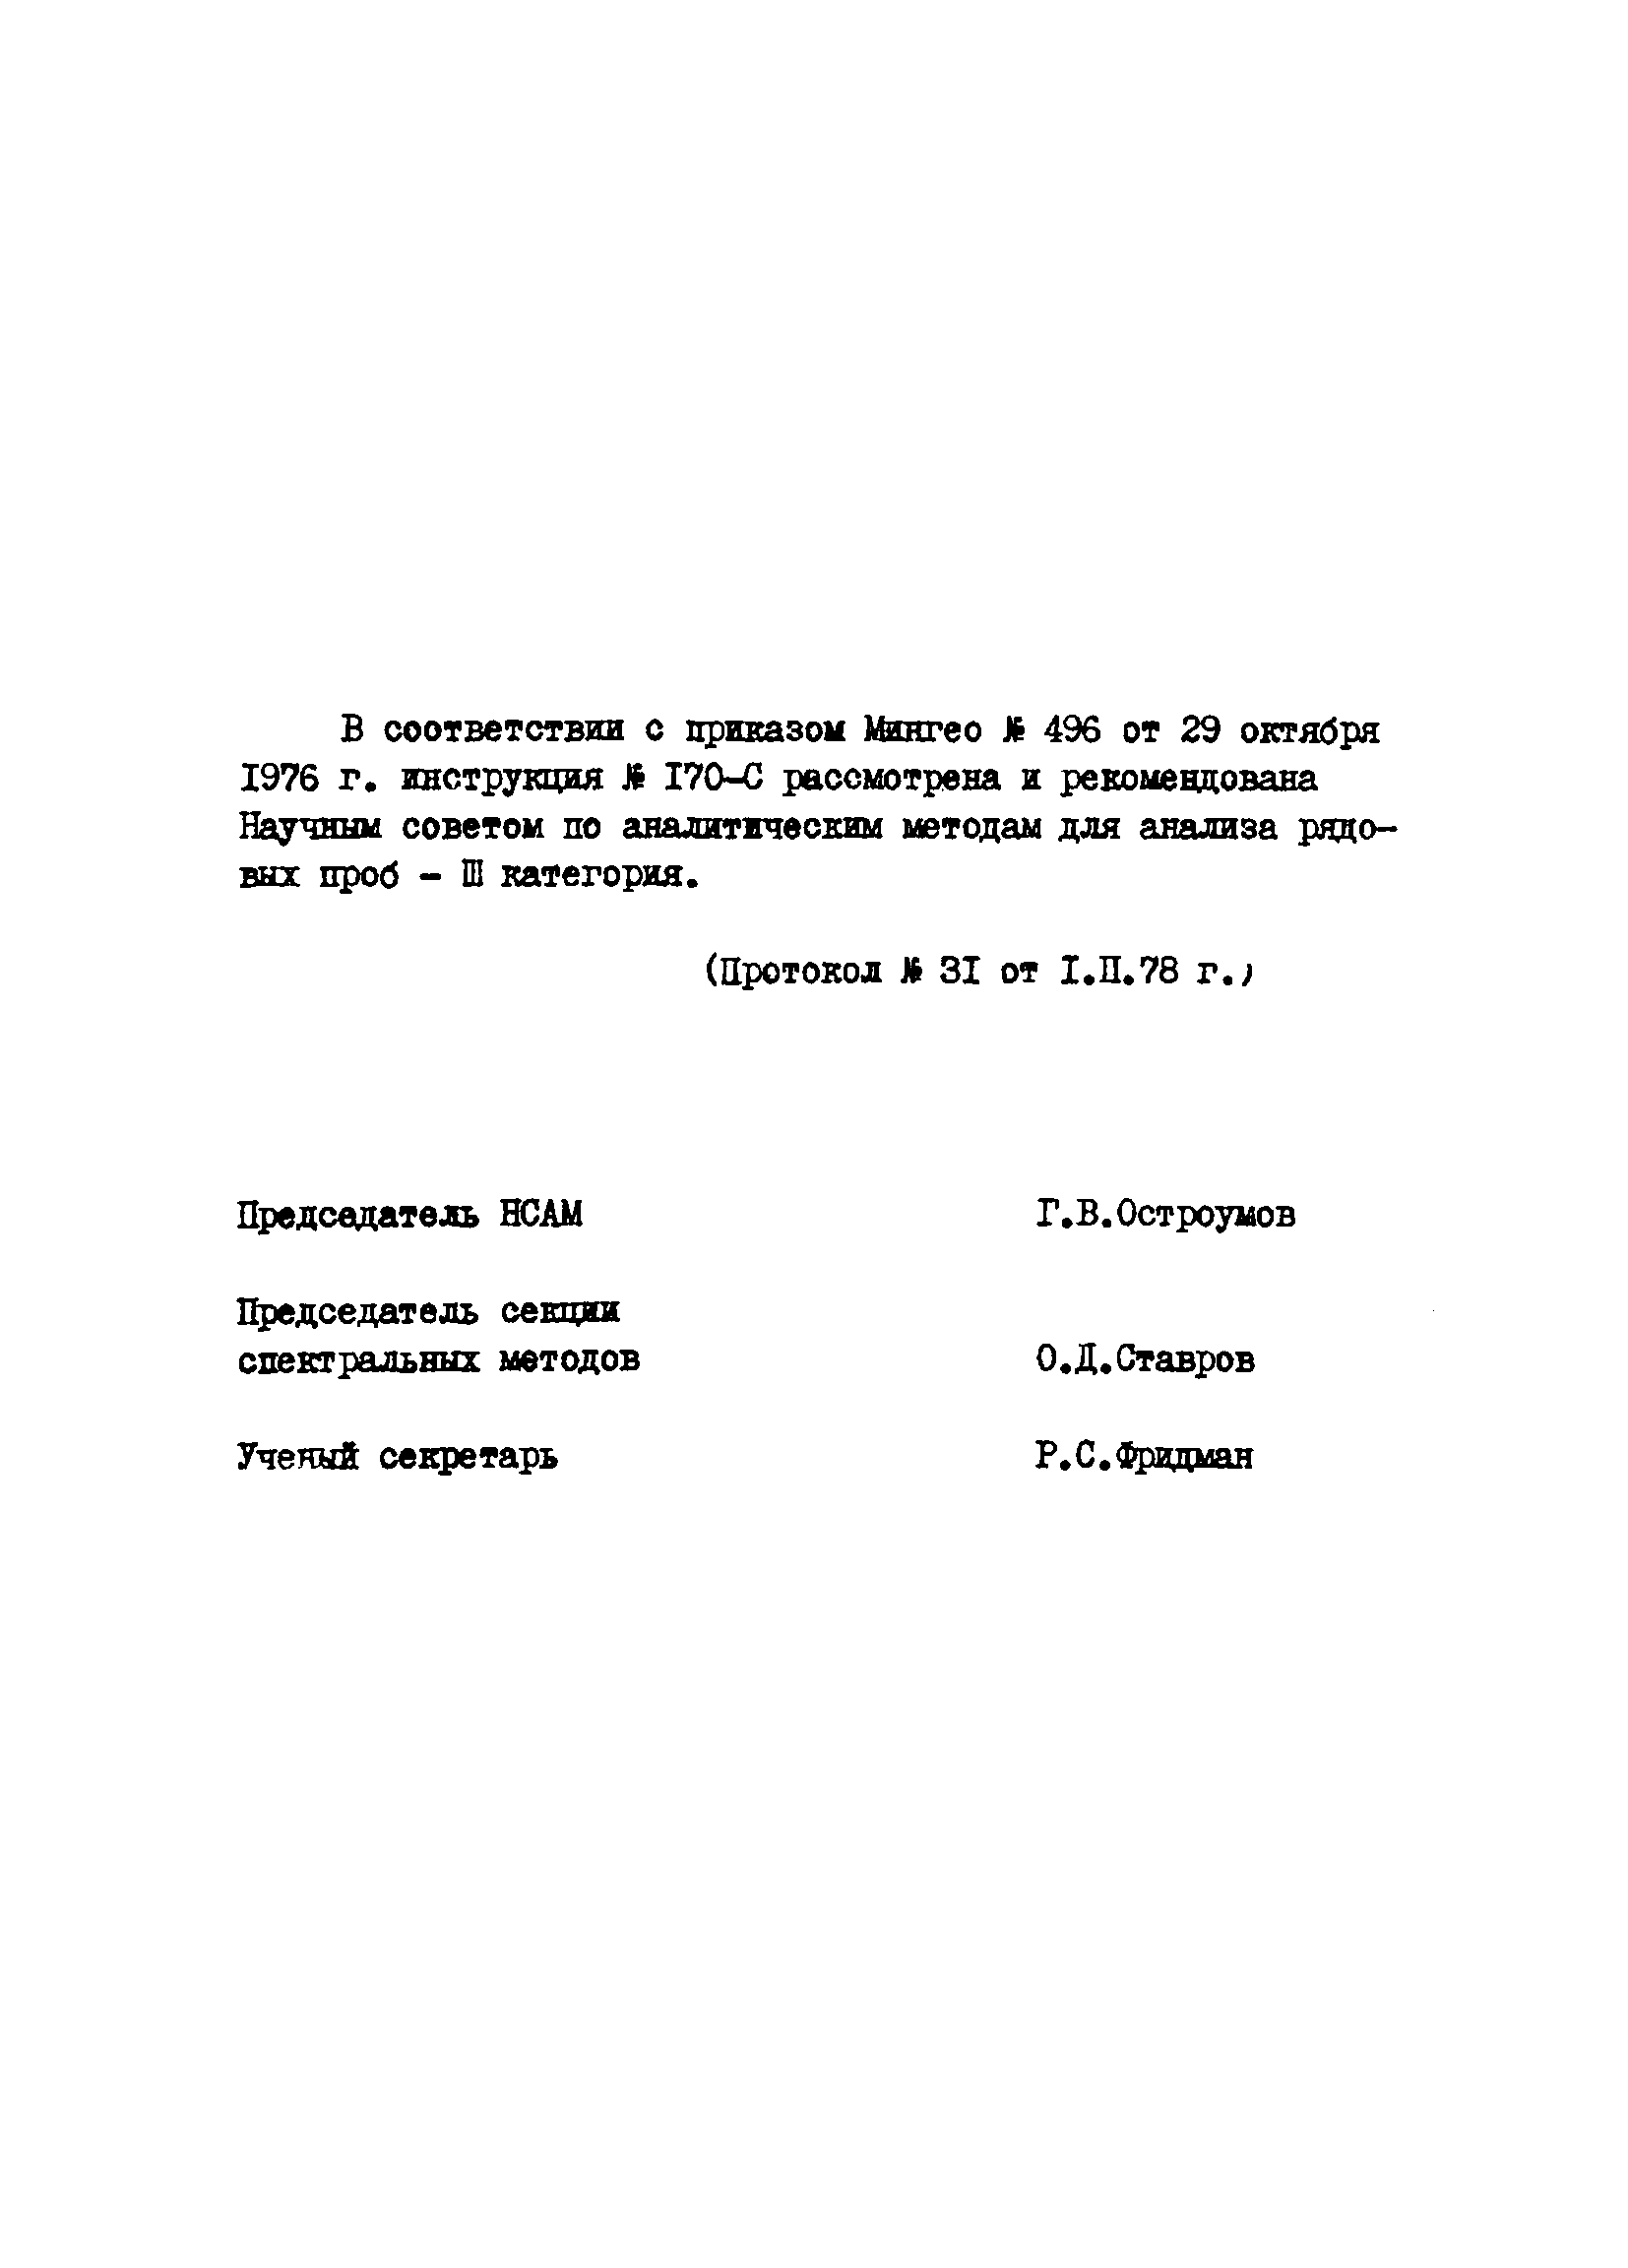 Инструкция НСАМ 170-С